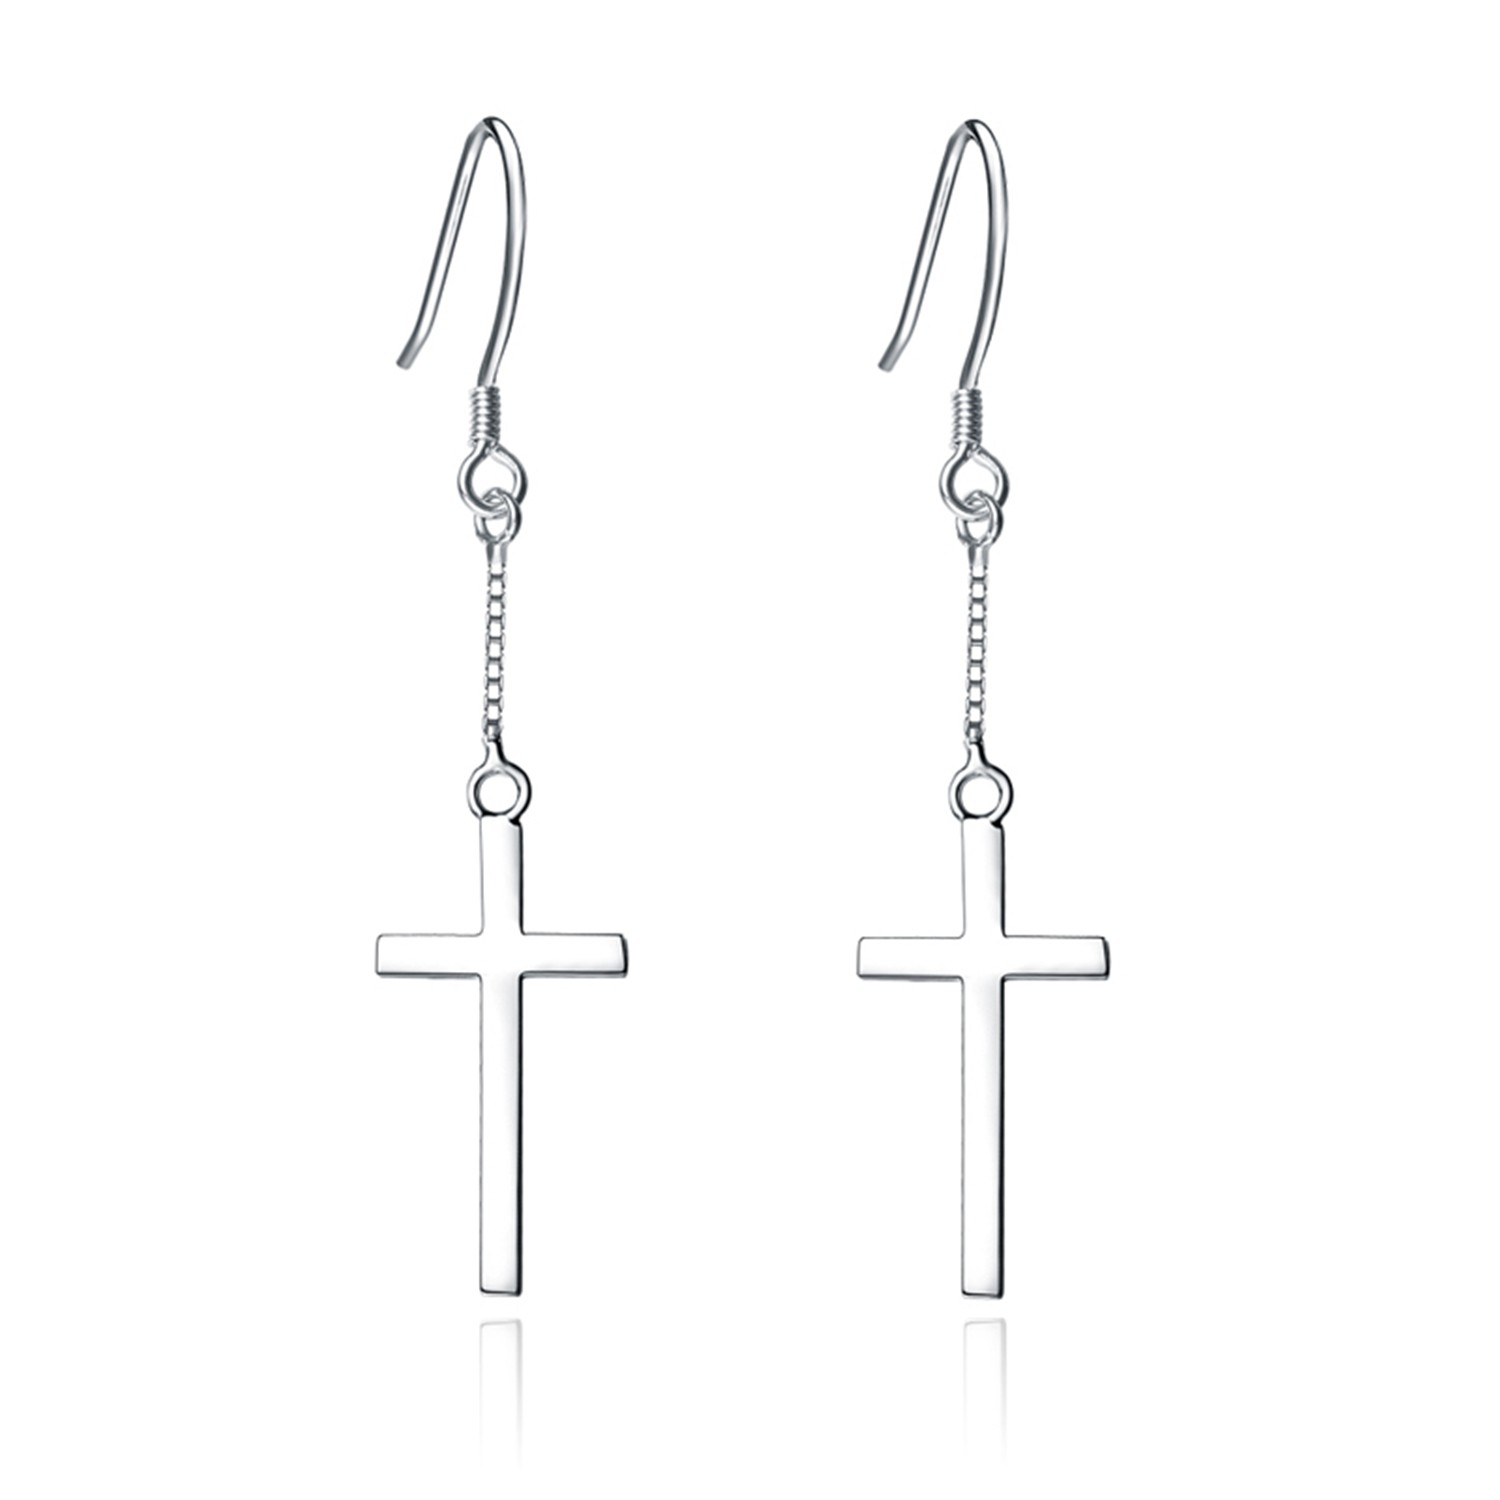 Factory direct sales earrings long earrings Sterling 925 silver cross pendant female earrings jewelr